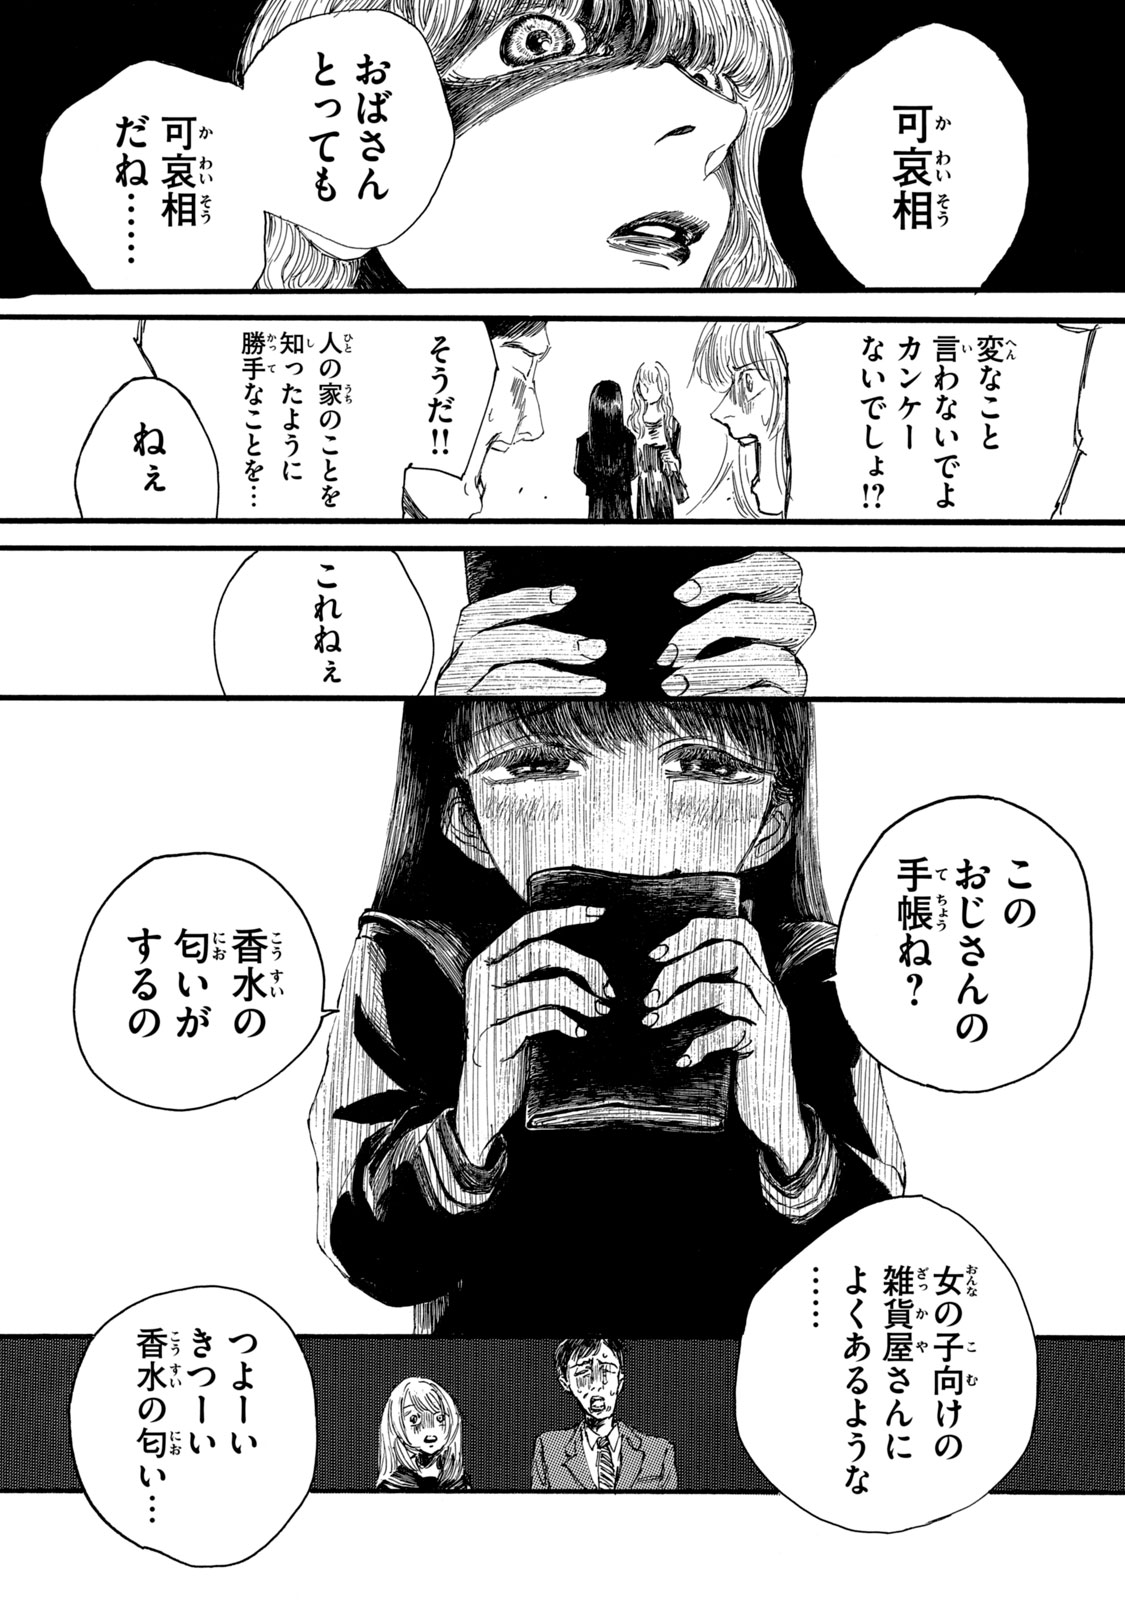 Watashi no Hara no Naka no Bakemono - Chapter 5 - Page 3